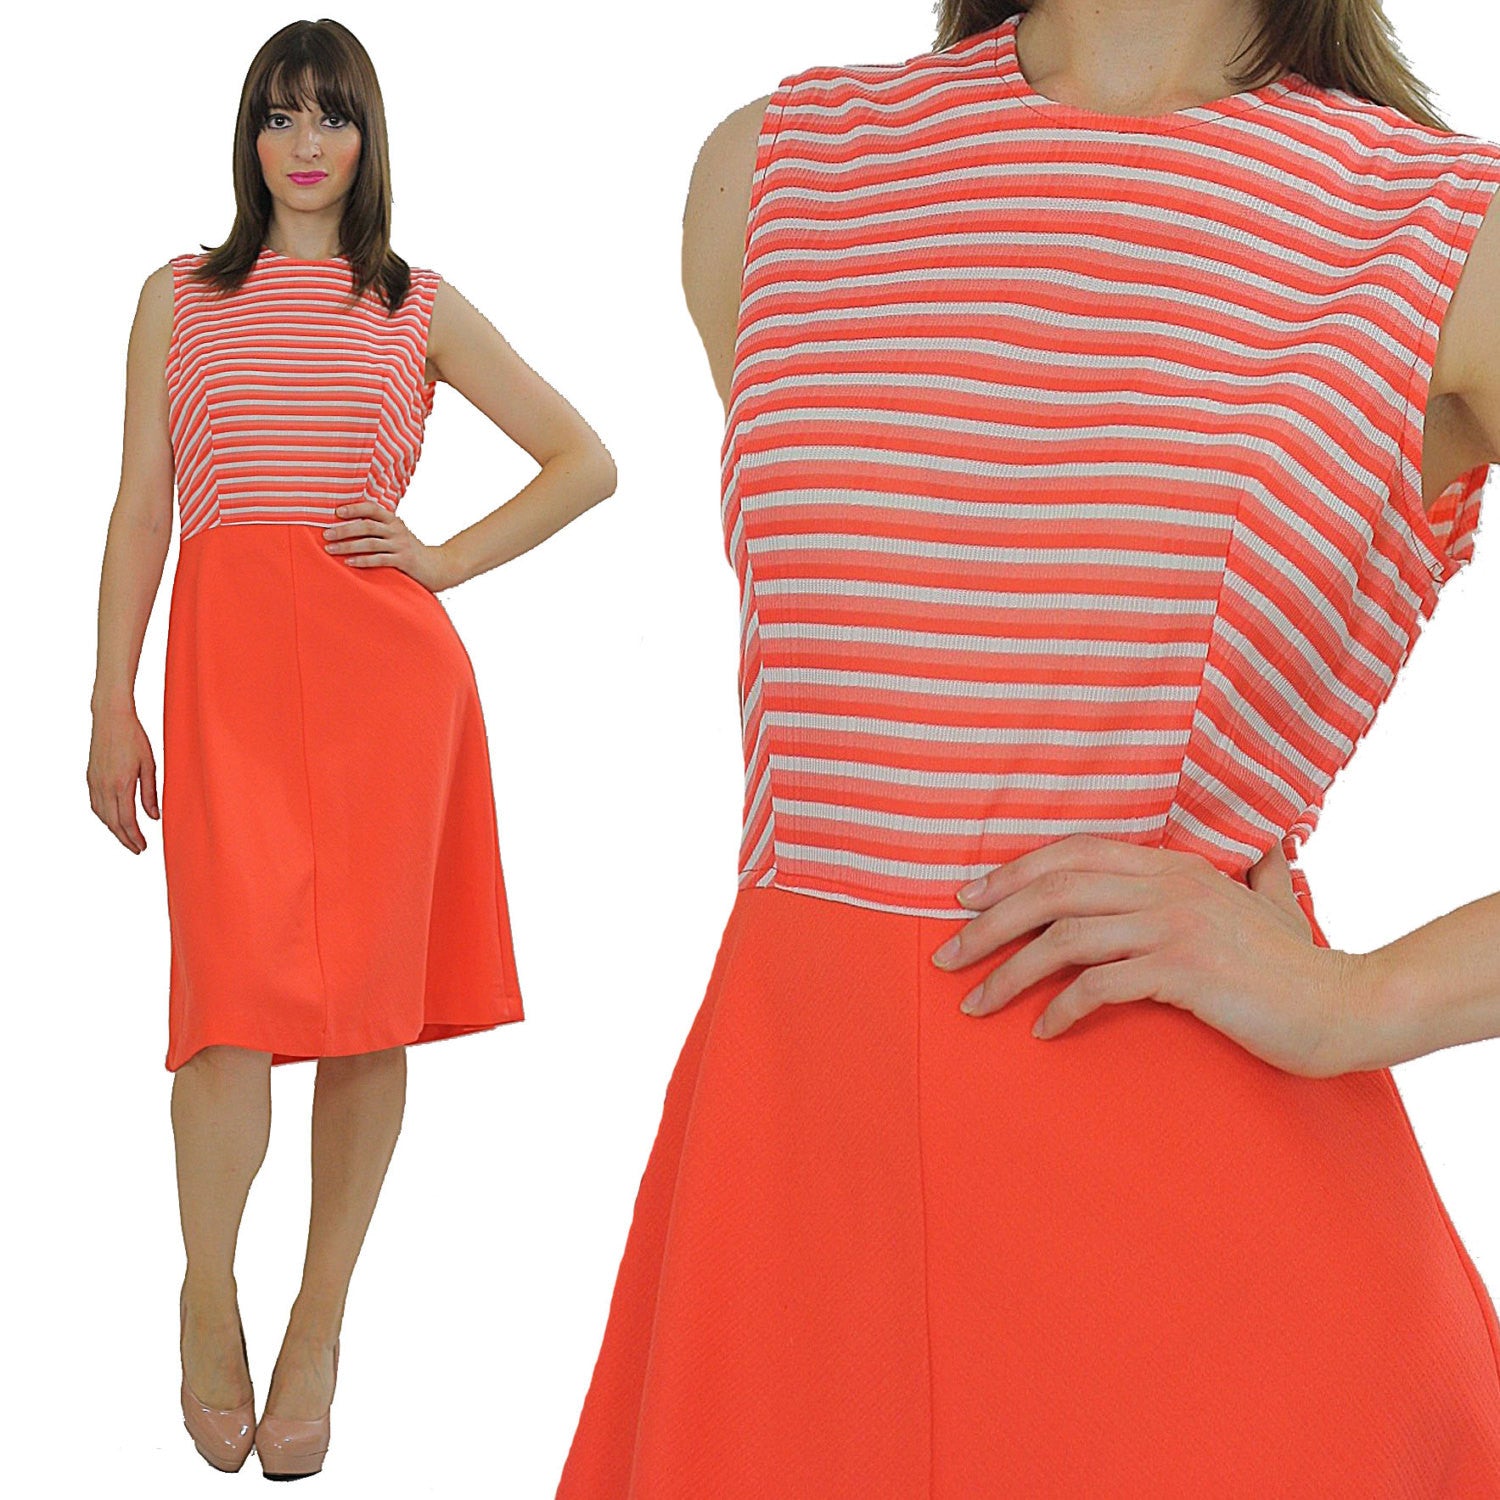 Genuine true vintage 60s neon orange mod striped dress - shabbybabe